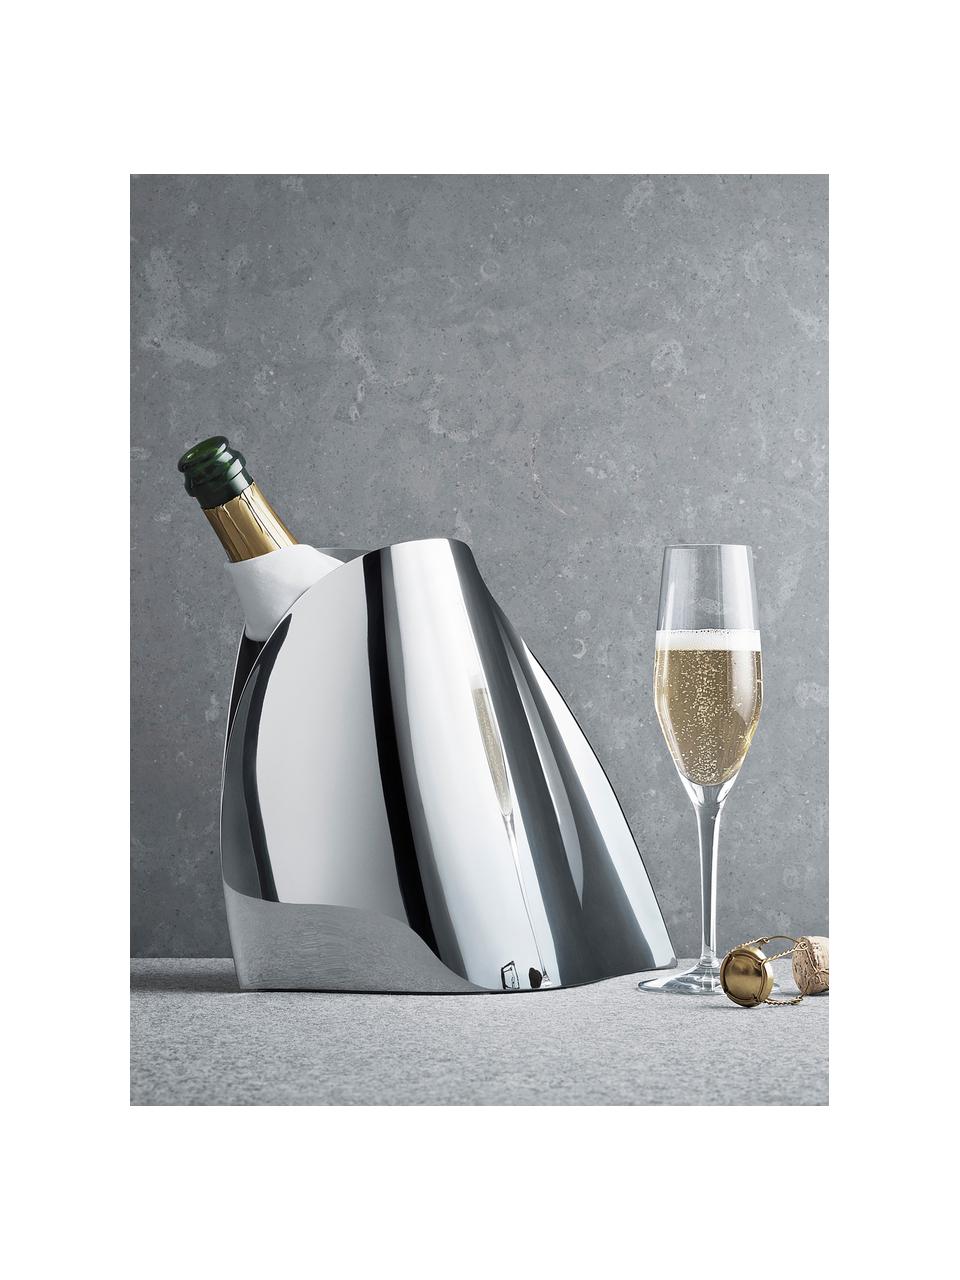 Edelstahl-Champagnerkühler Indulgence in organischer Form, Edelstahl, poliert, Silberfarben, hochglanzpoliert, B 28 x H 23 cm